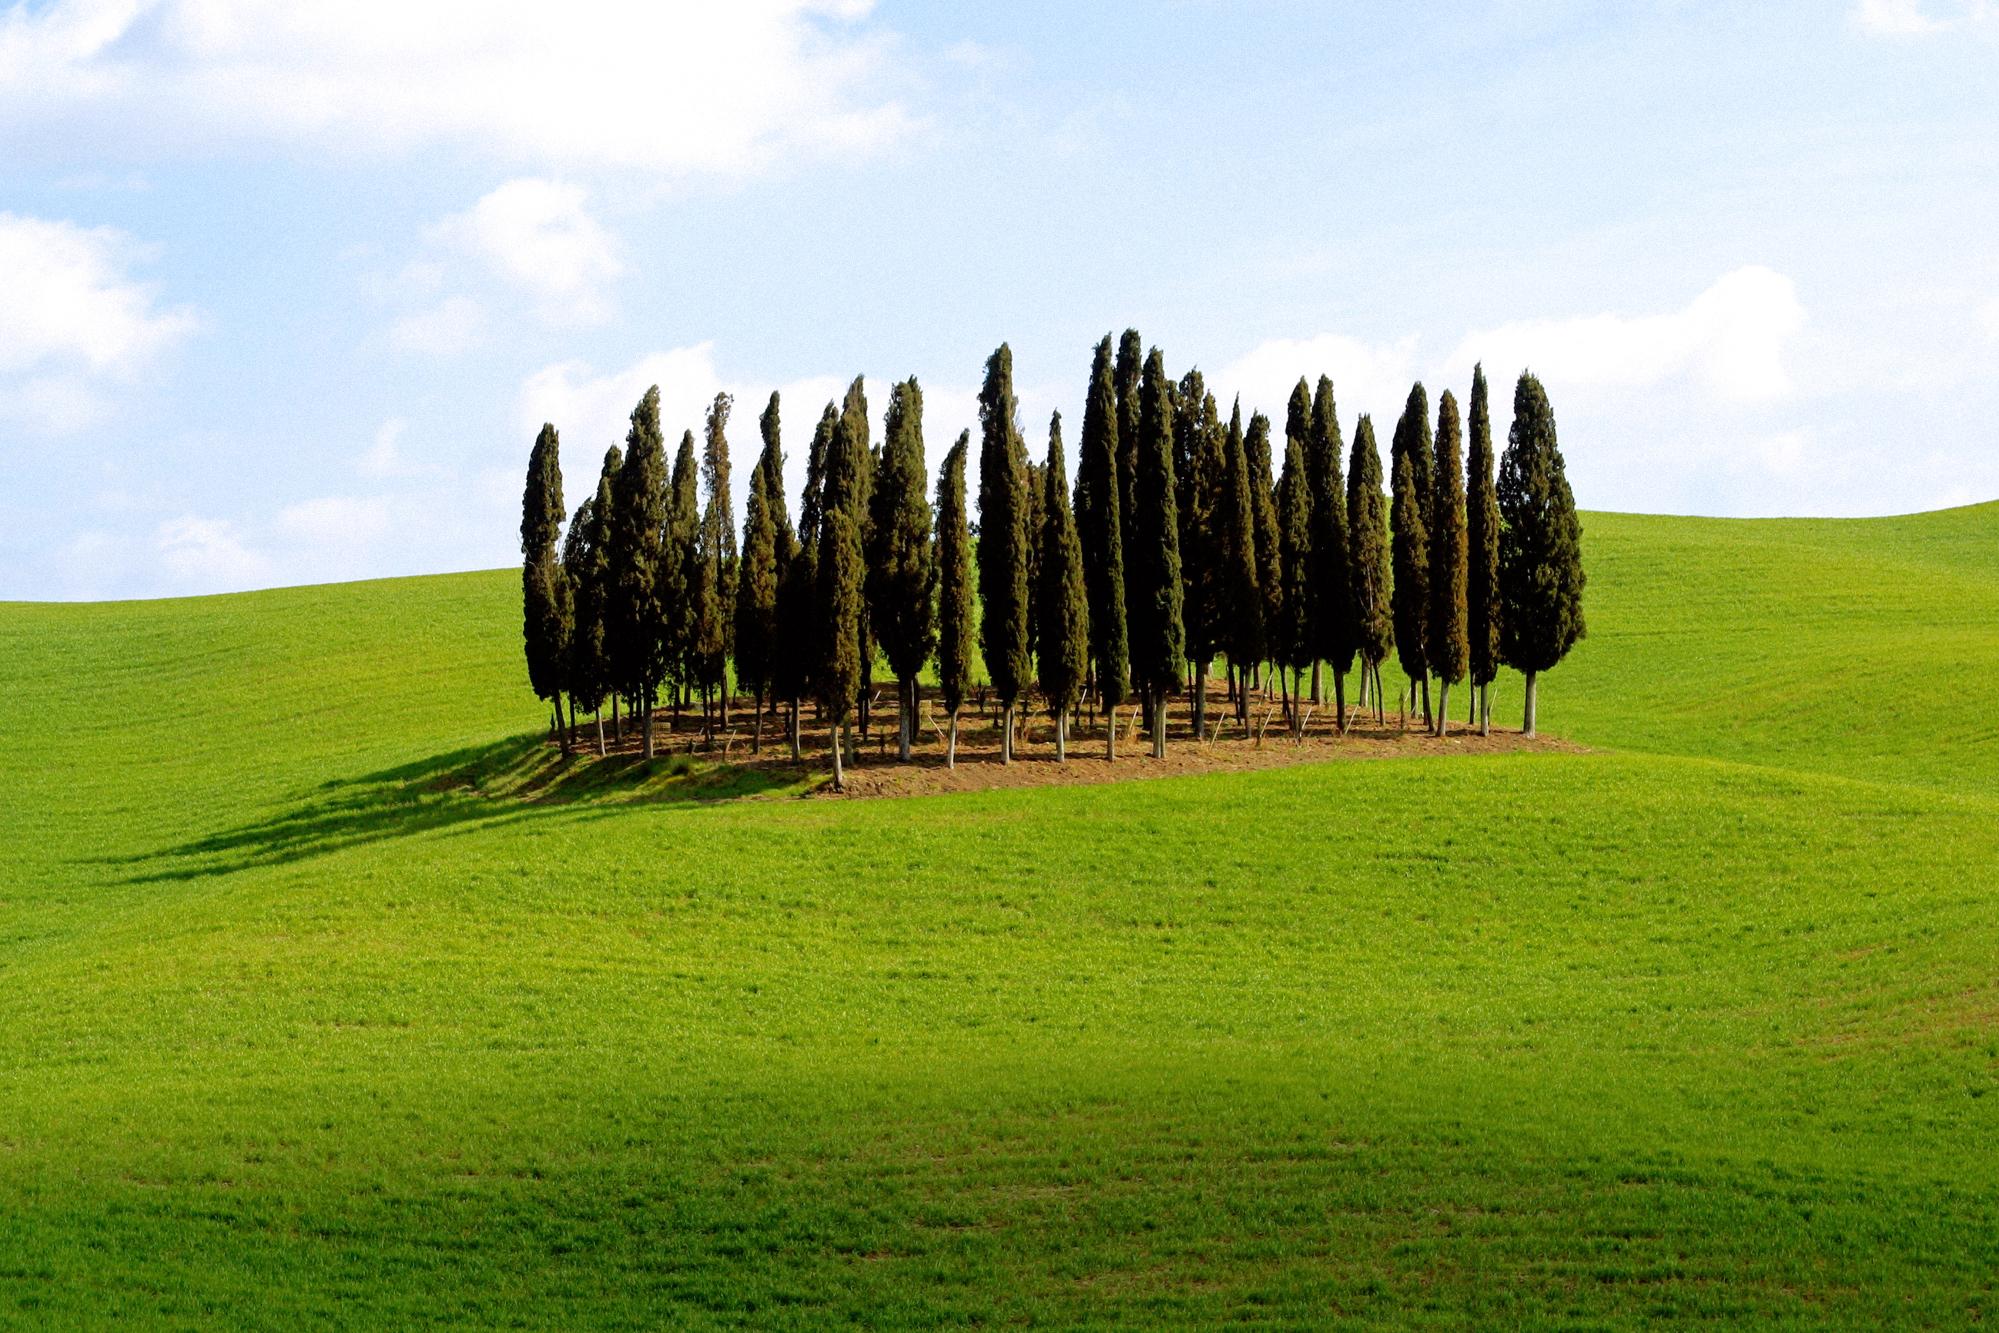 trees, grass, fields - desktop wallpaper